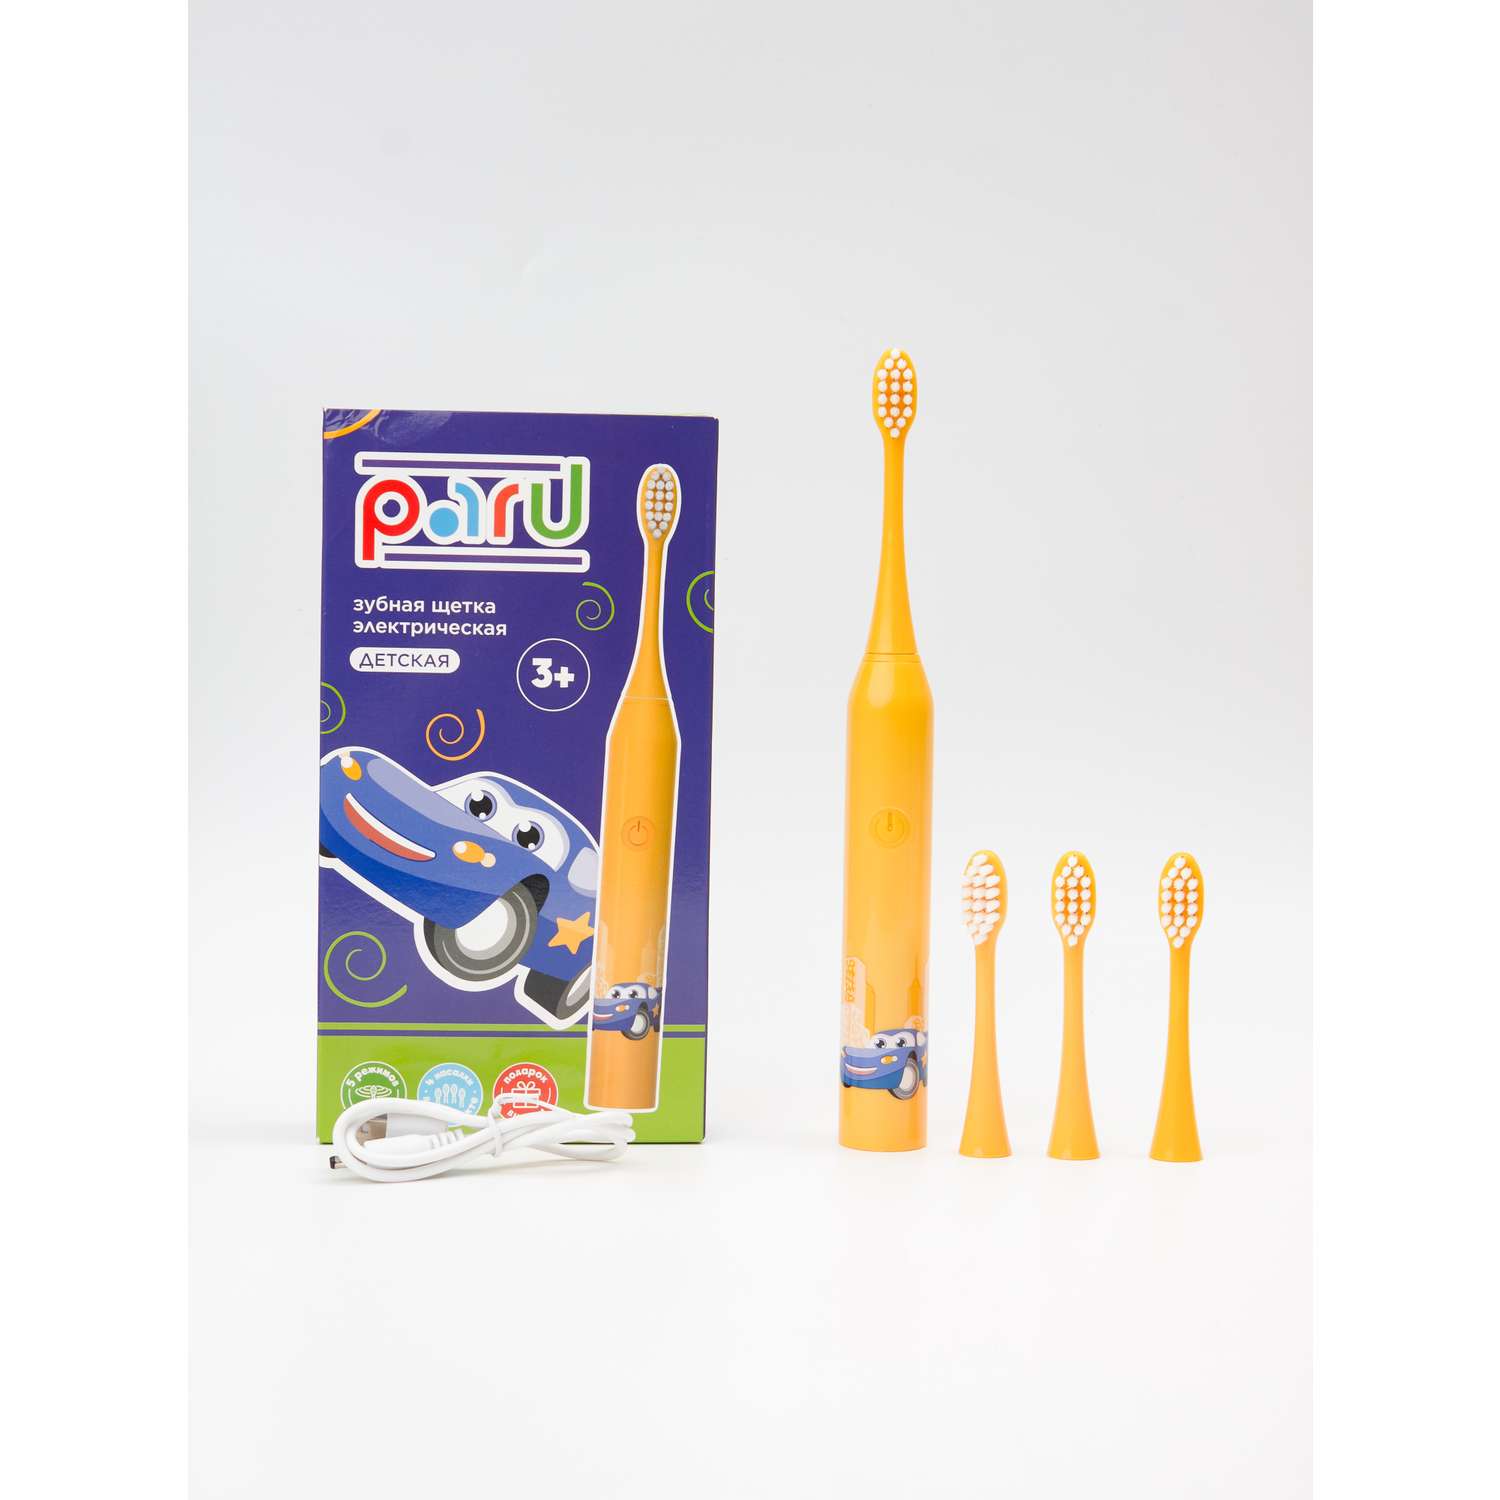 Электрическая зубная щетка PARU Электрощетка для детей - фото 10